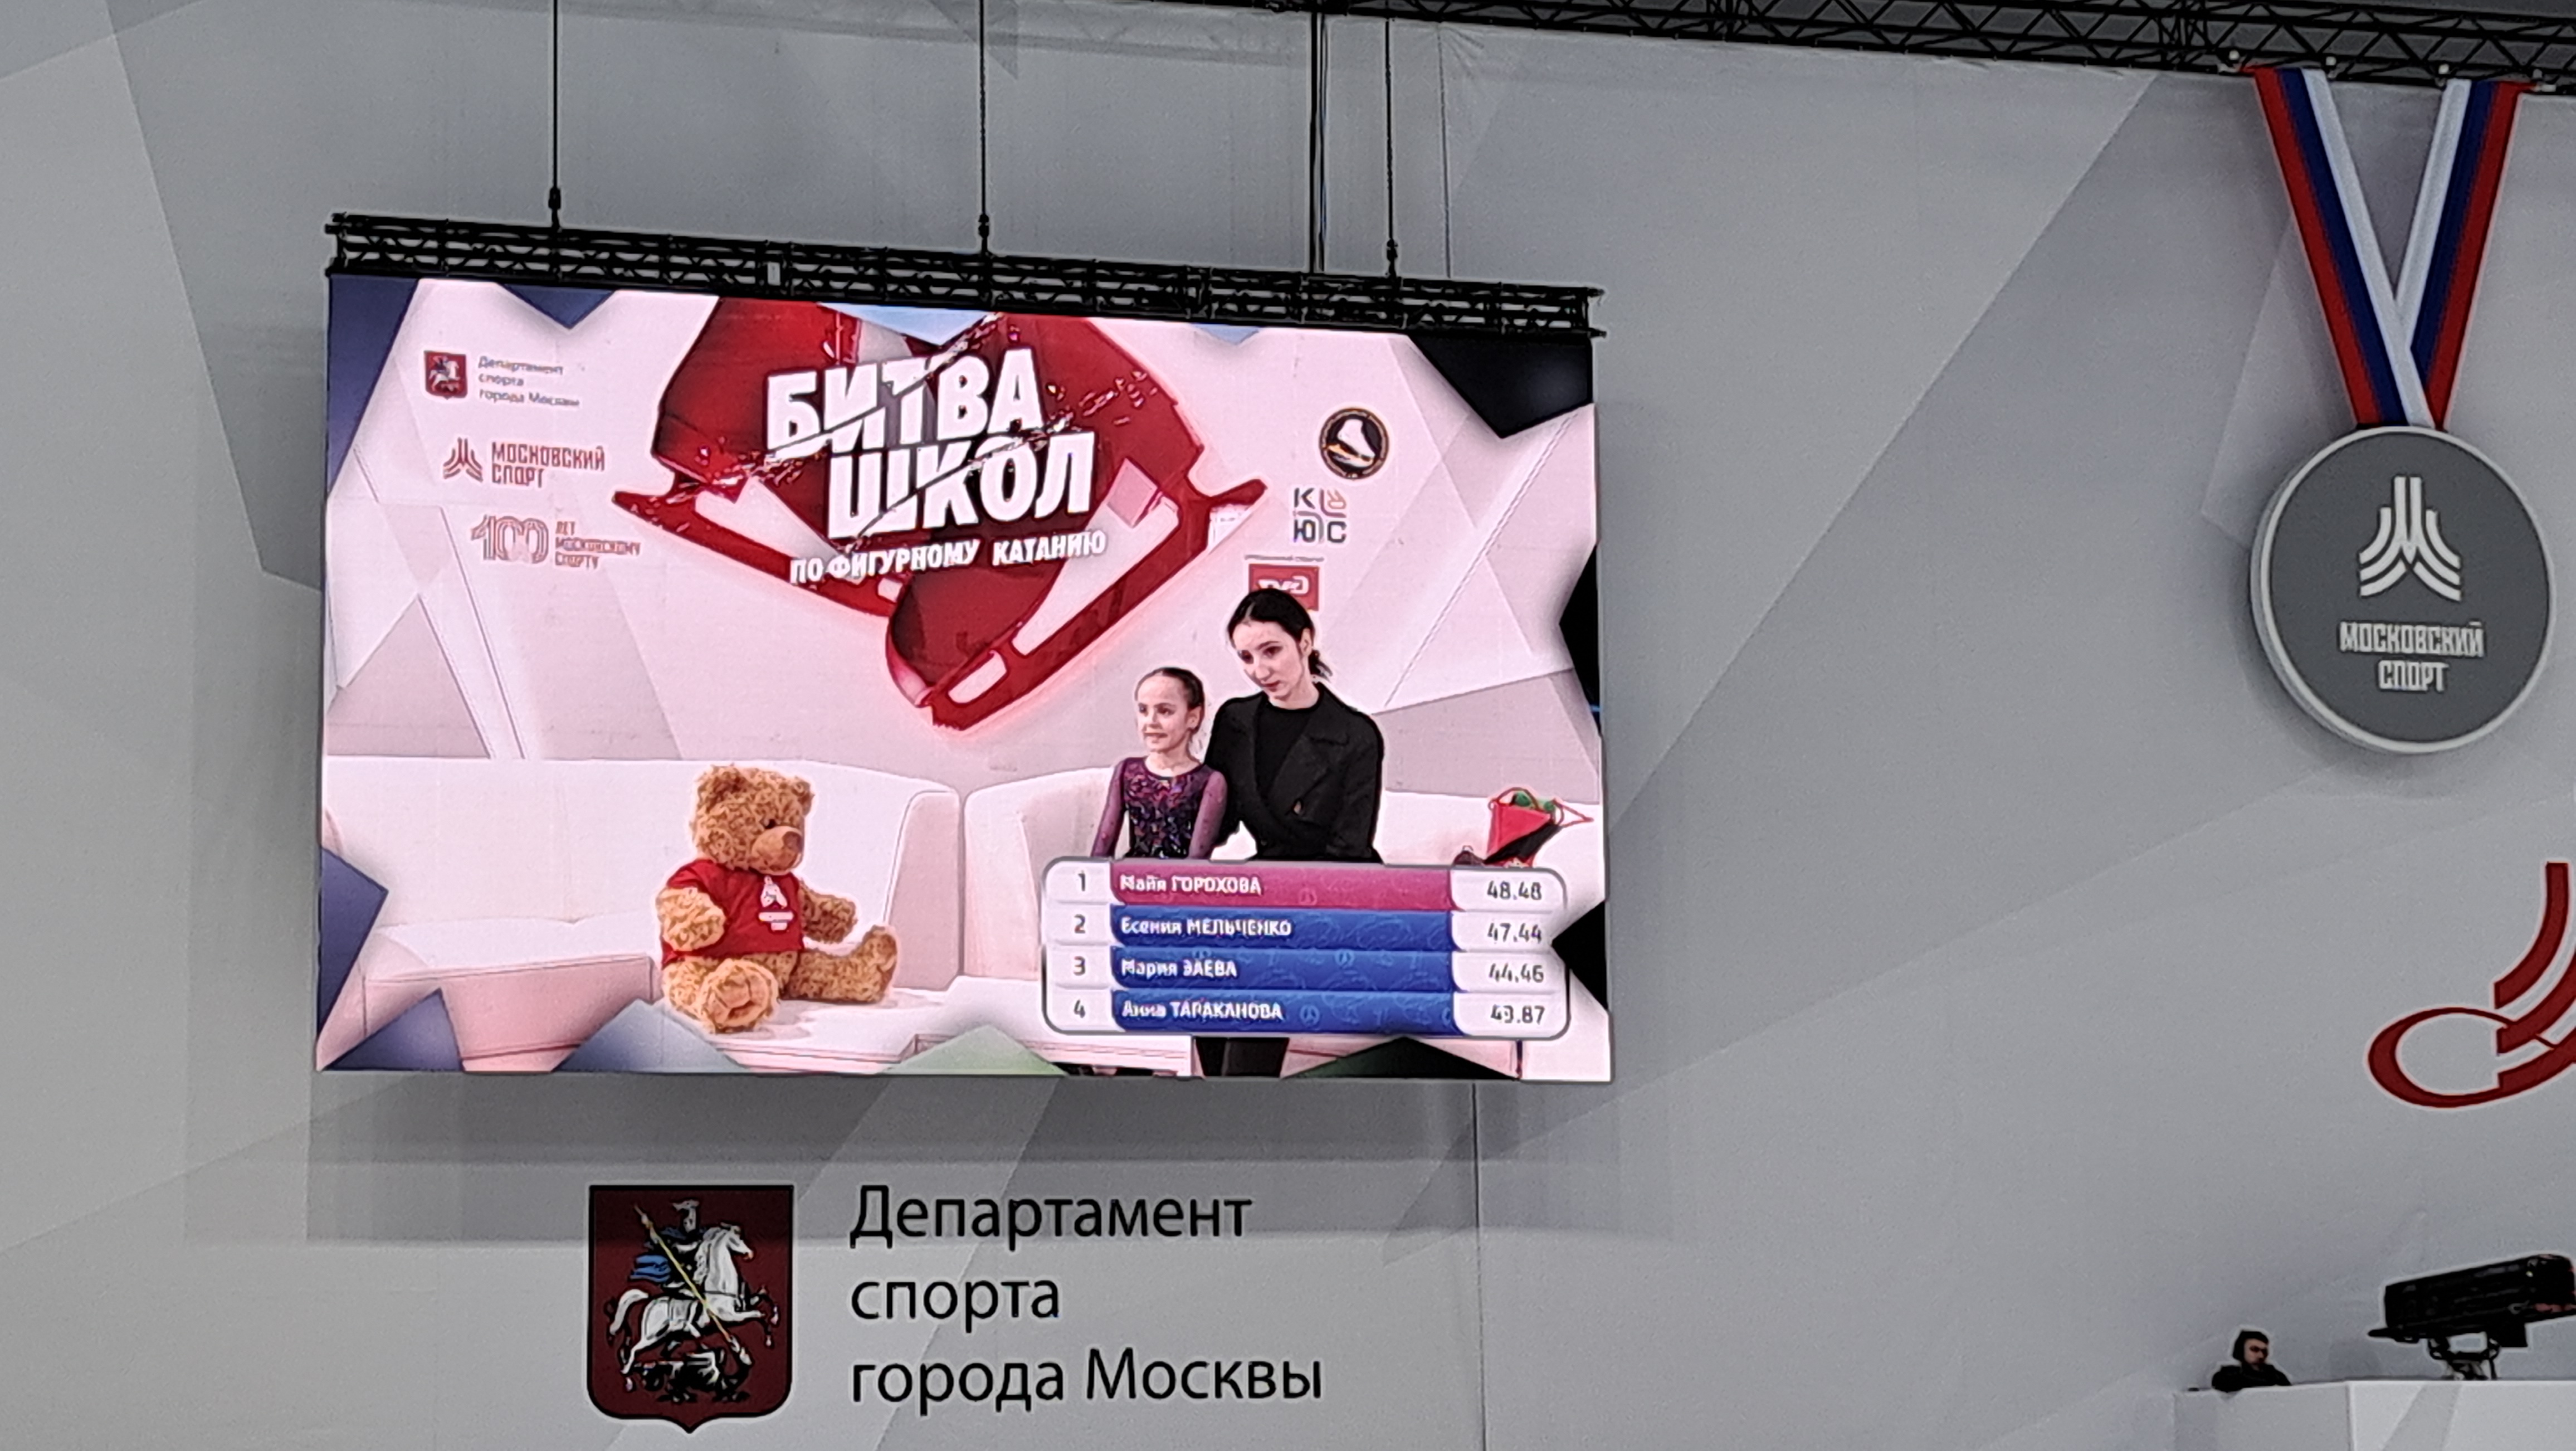 Итоги четвертого этапа Кубка Московского спорта по фигурному катанию